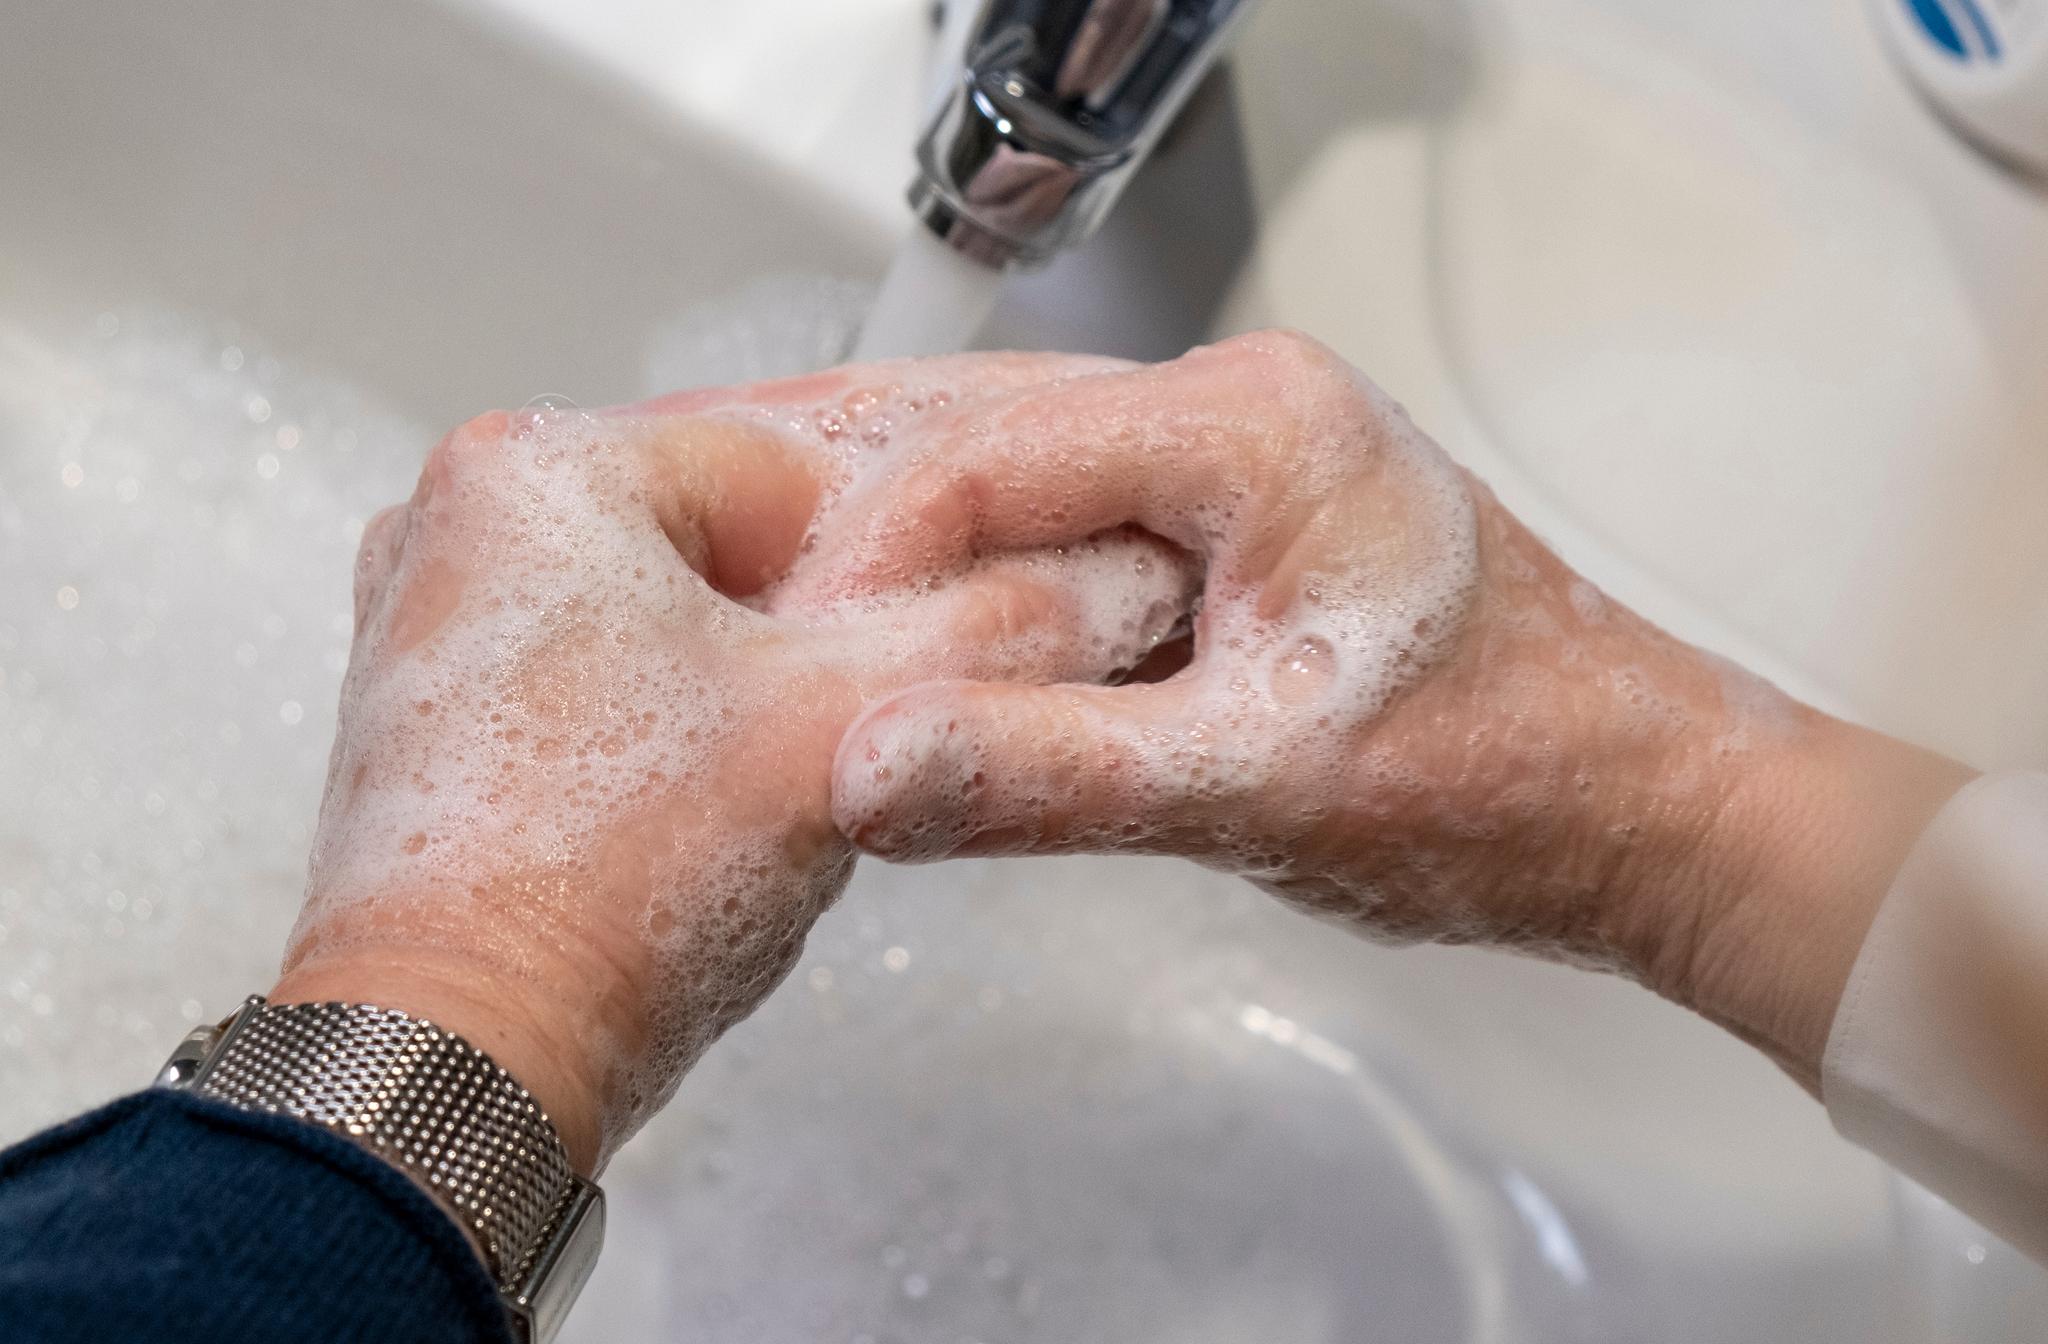 Vasker du hendene med såpe, er du med på en viktig nanokrigføring mot koronaviruset, skriver innleggsforfatterne.